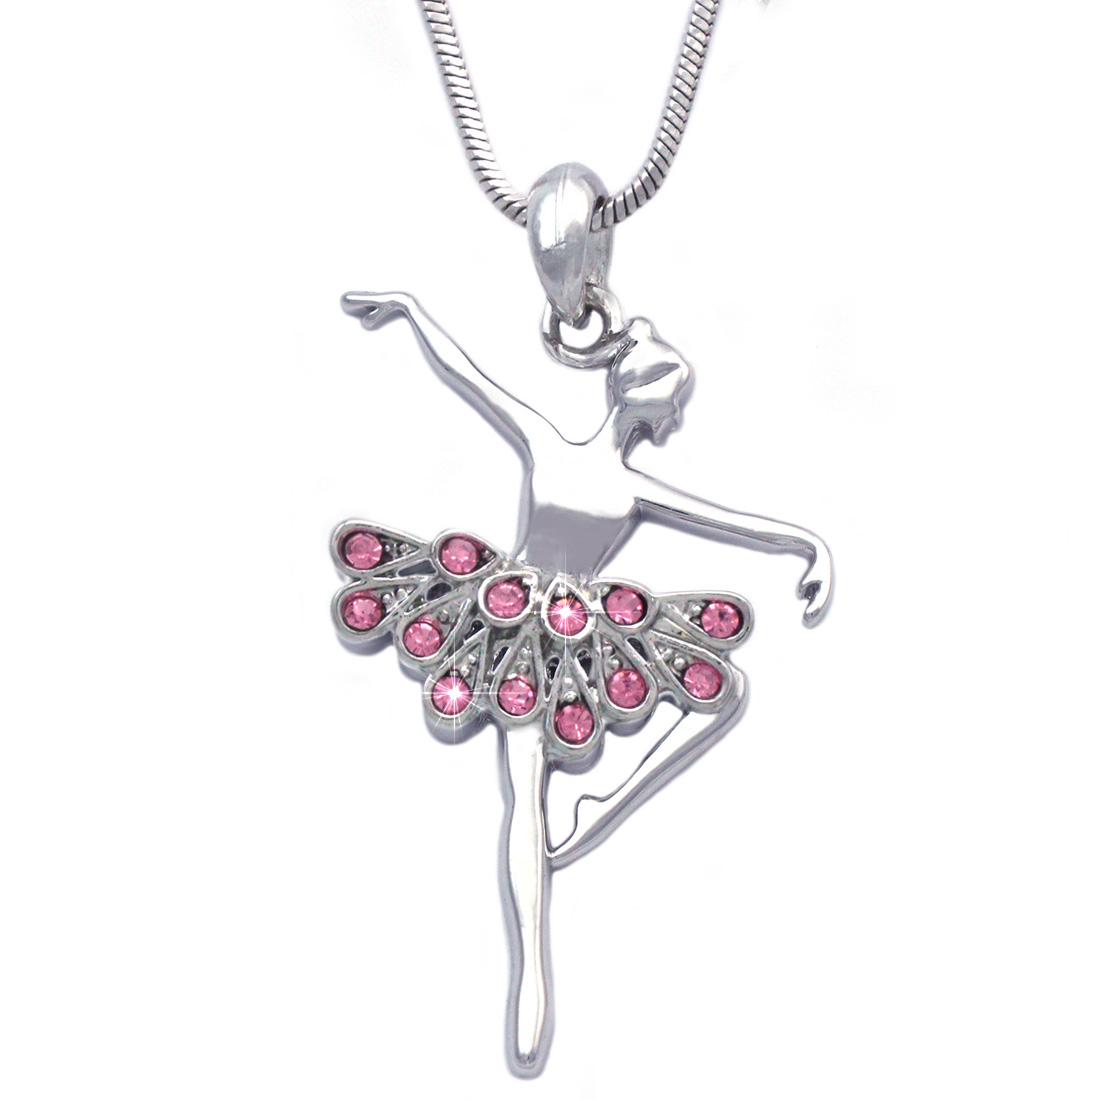 cocojewelry Ballerina Ballet Dancer Dancing Girl Pendant Necklace Jewelry - image 1 of 2